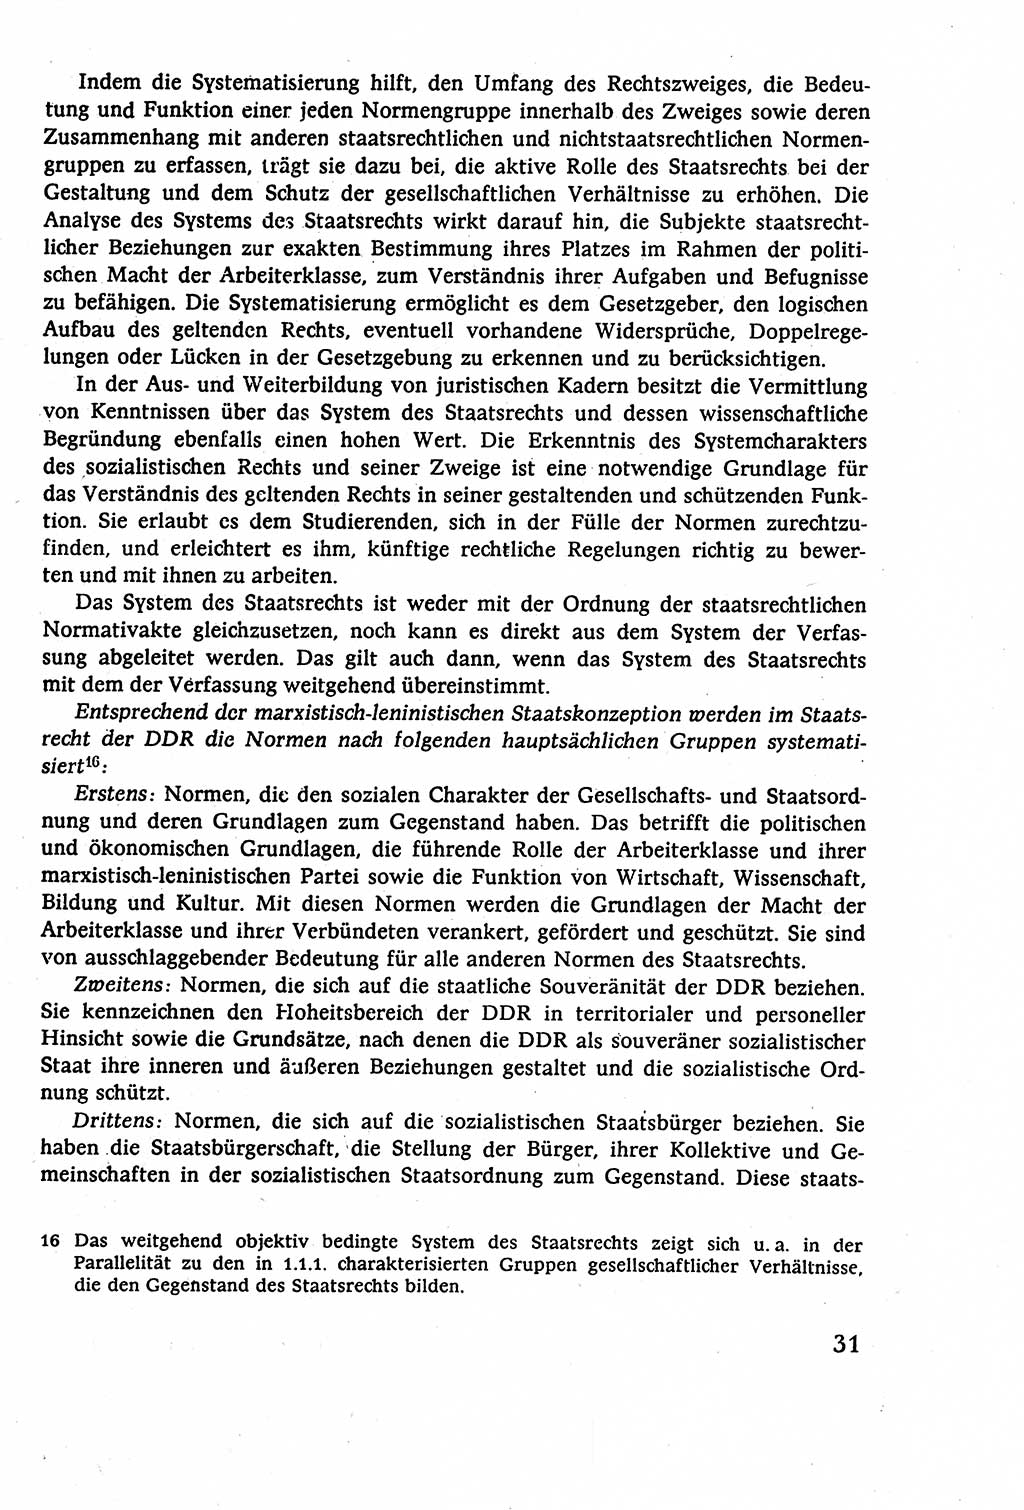 Staatsrecht der DDR (Deutsche Demokratische Republik), Lehrbuch 1977, Seite 31 (St.-R. DDR Lb. 1977, S. 31)